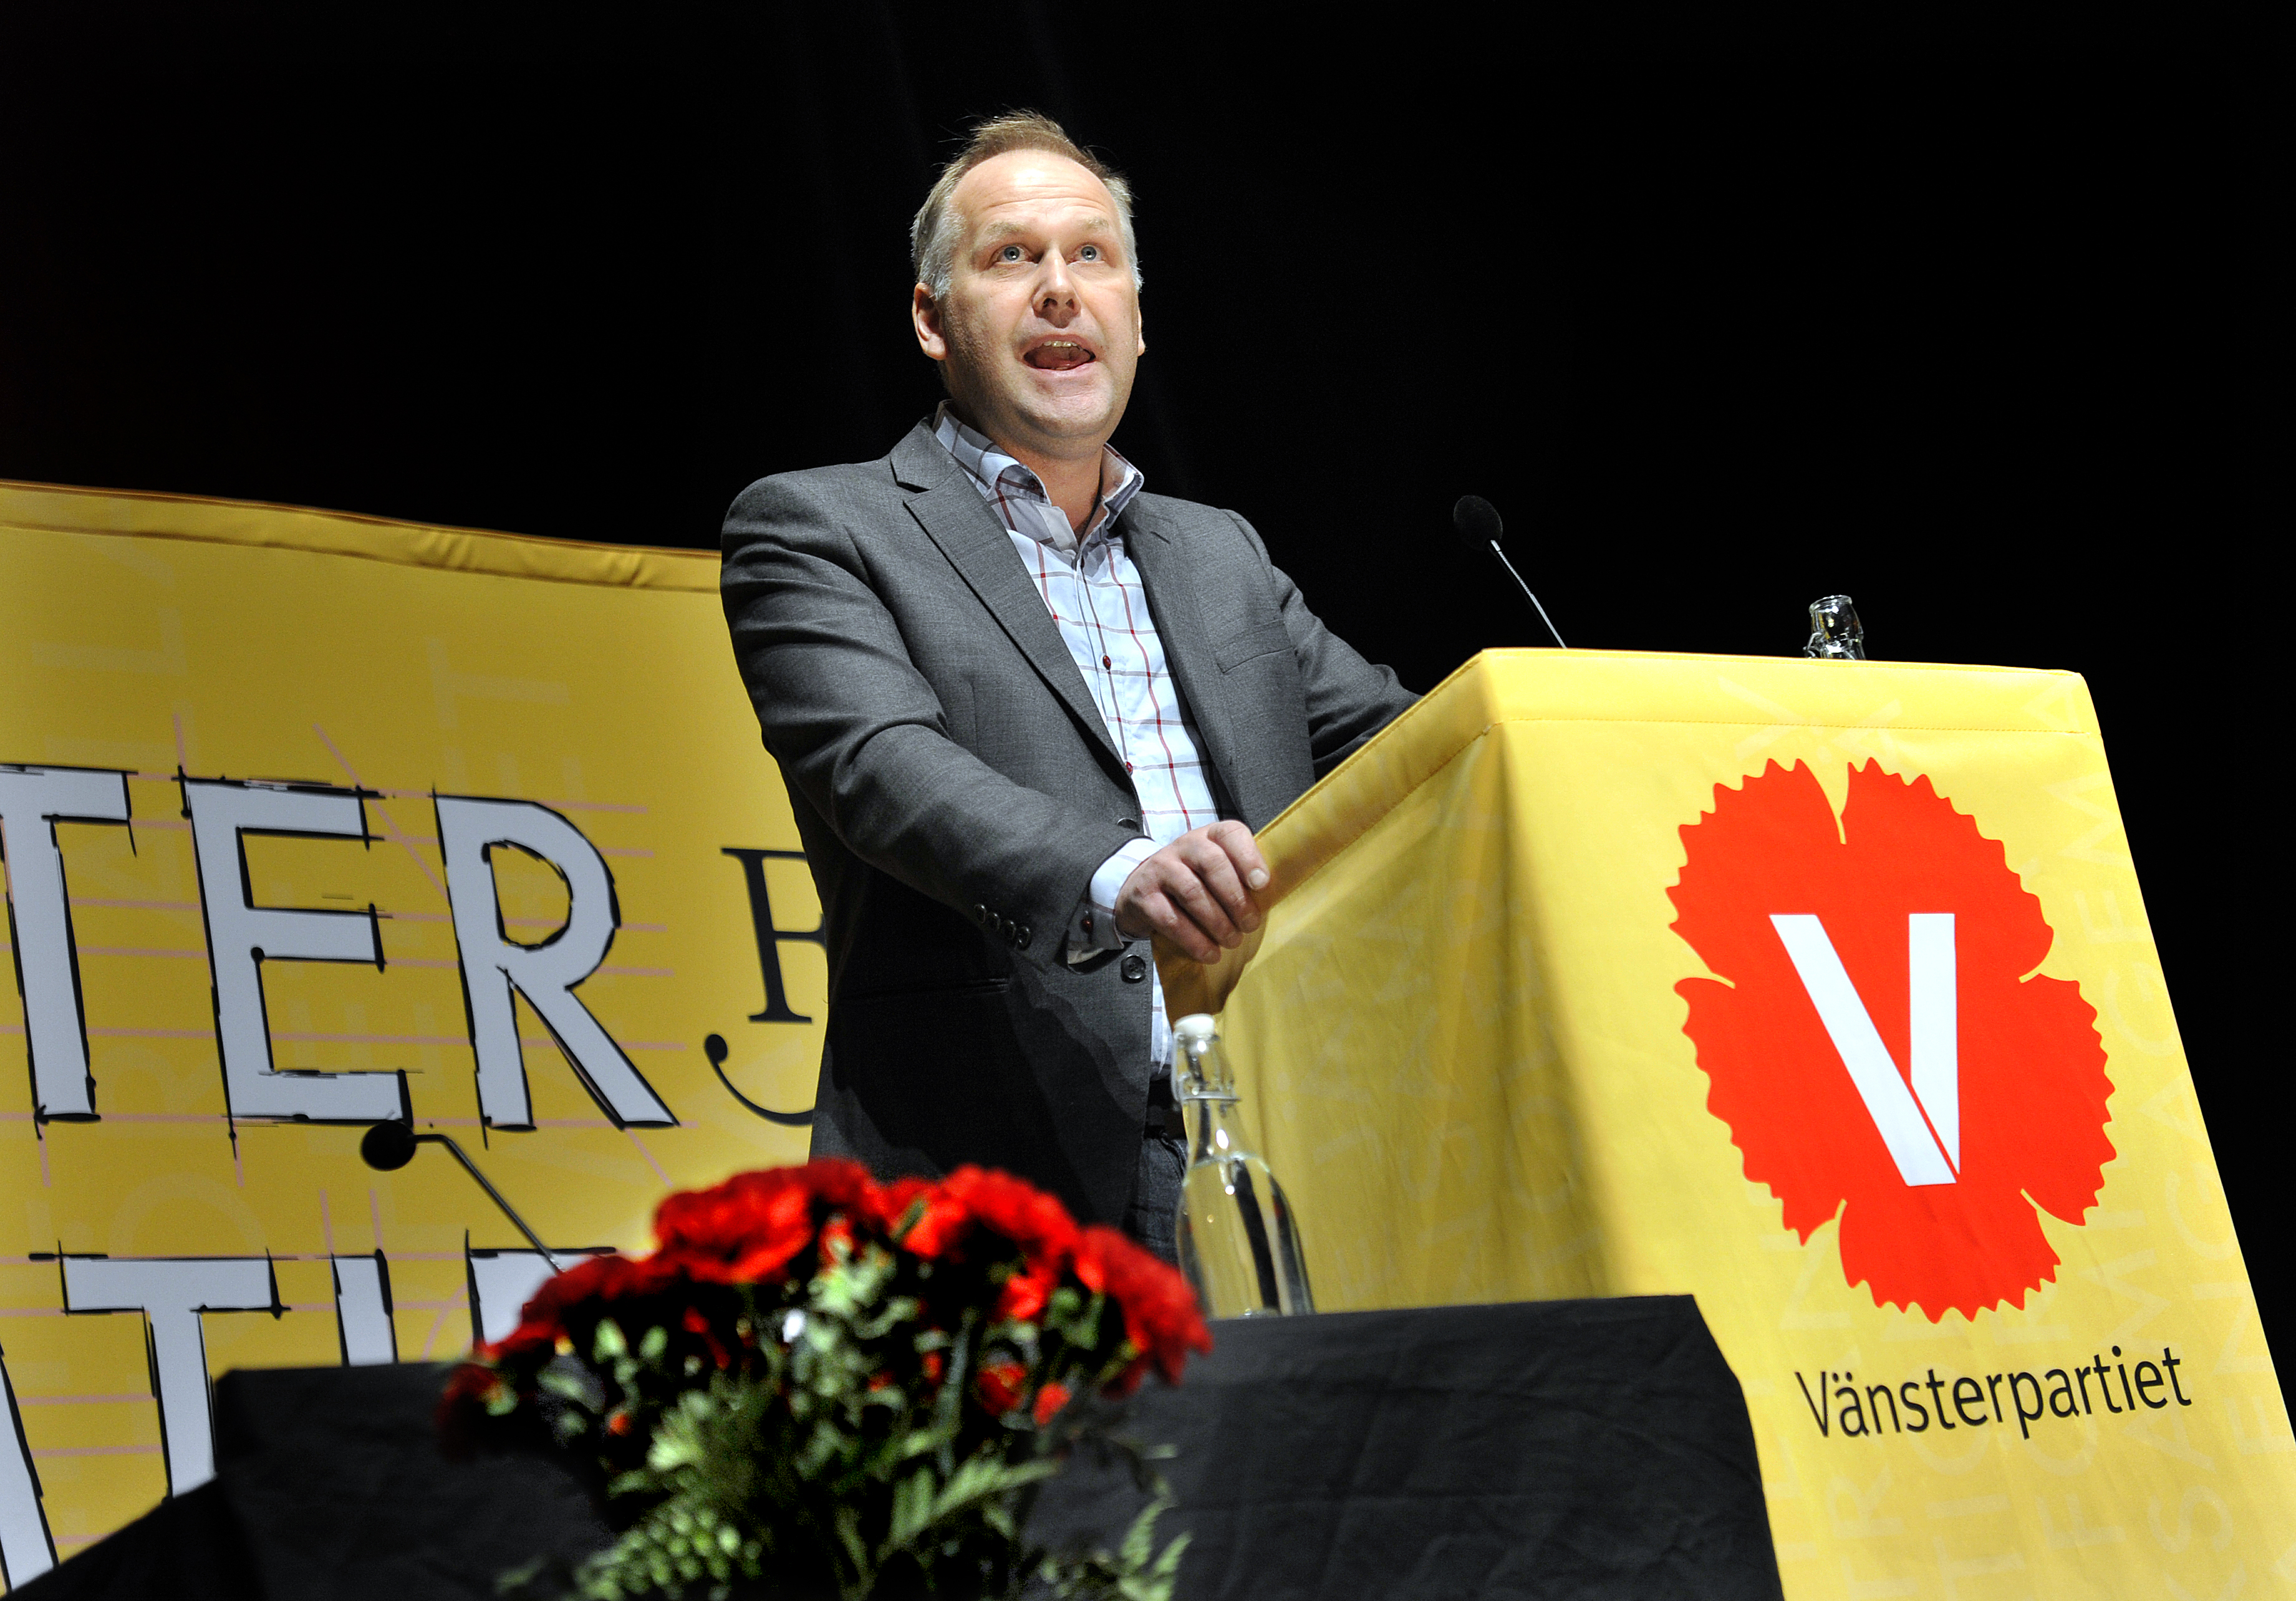 Som nyvald partiordförnade under vänsterartiets kongress i Uppsala i januari 2012. 